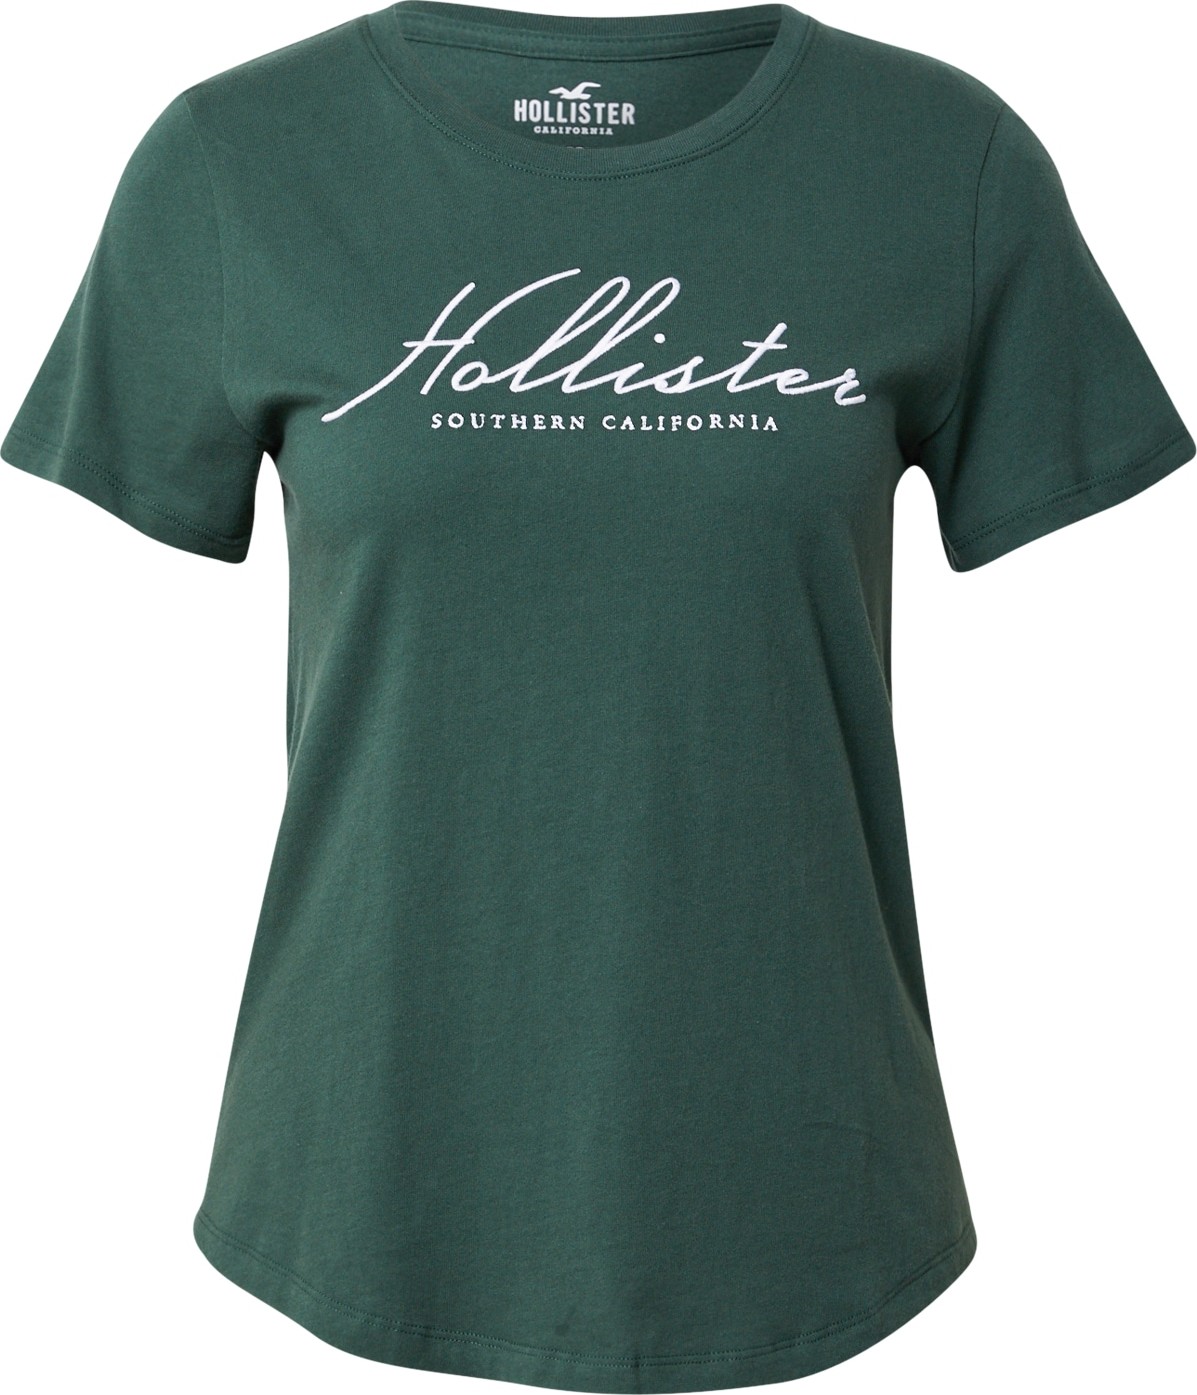 Tričko Hollister smaragdová / bílá